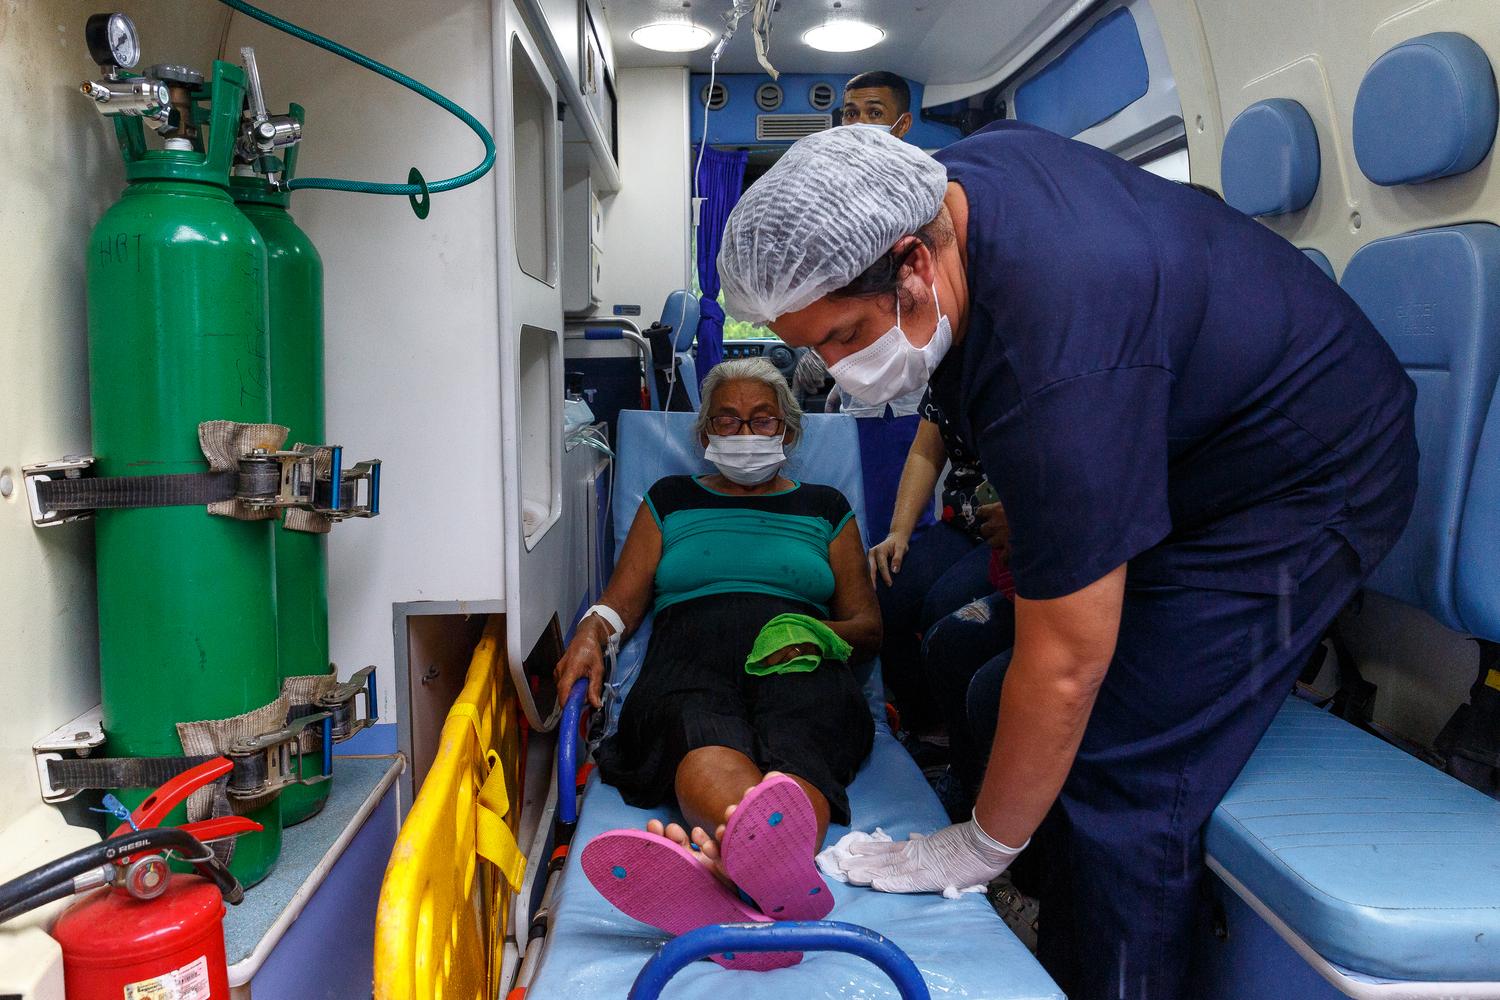 Une patiente qui était dans le service Covid-19 est transportée dans une ambulance qui la conduira à l'aéroport de Tefé. Les médecins ont décidé de la tranférer vers la capitale de l'État, Manaus, où il existe davantage de ressources pour son traitement contre le Covid-19. État d'Amazonas, Brésil, décembre 2020. 